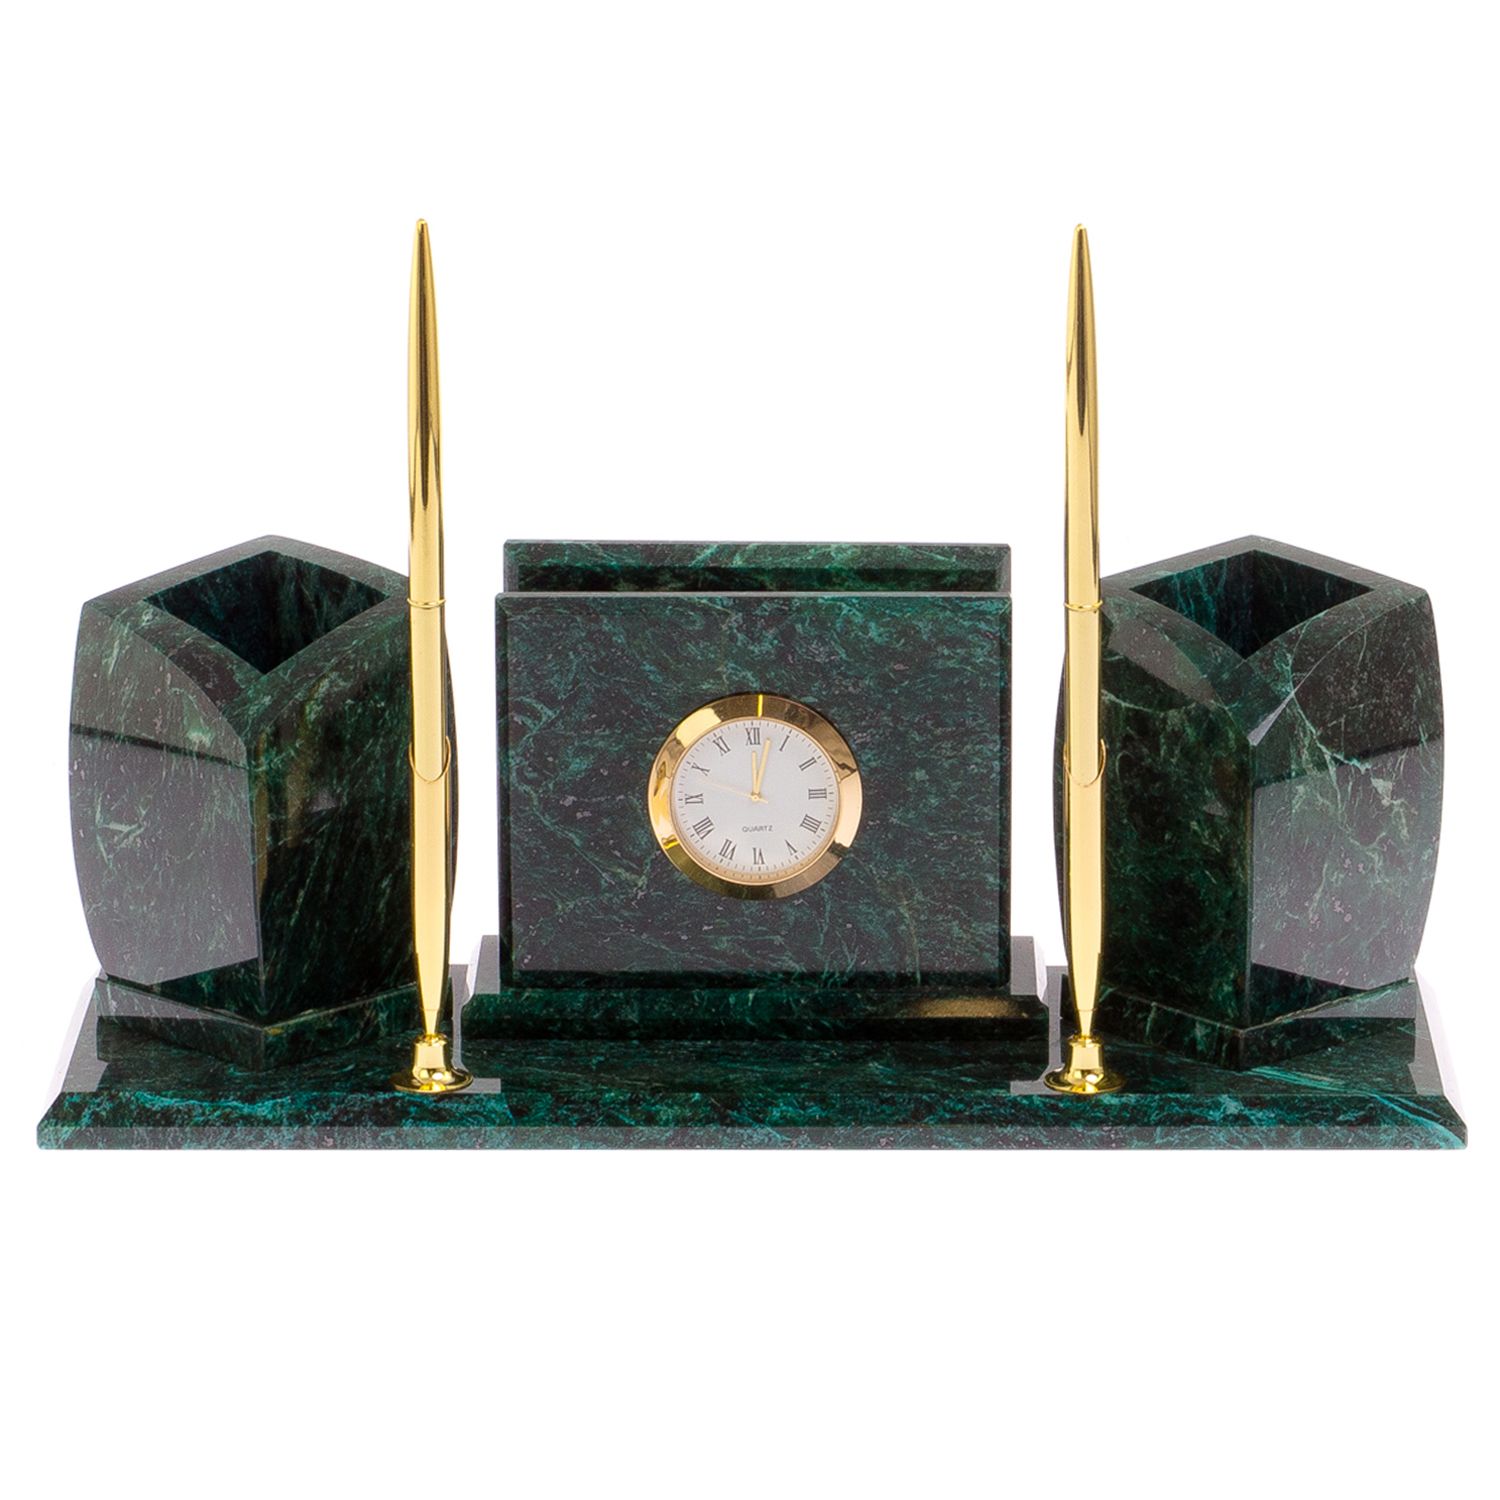 Мини-набор с часами камень змеевик 125319 купить в Москве винтернет-магазине Уральский сувенир